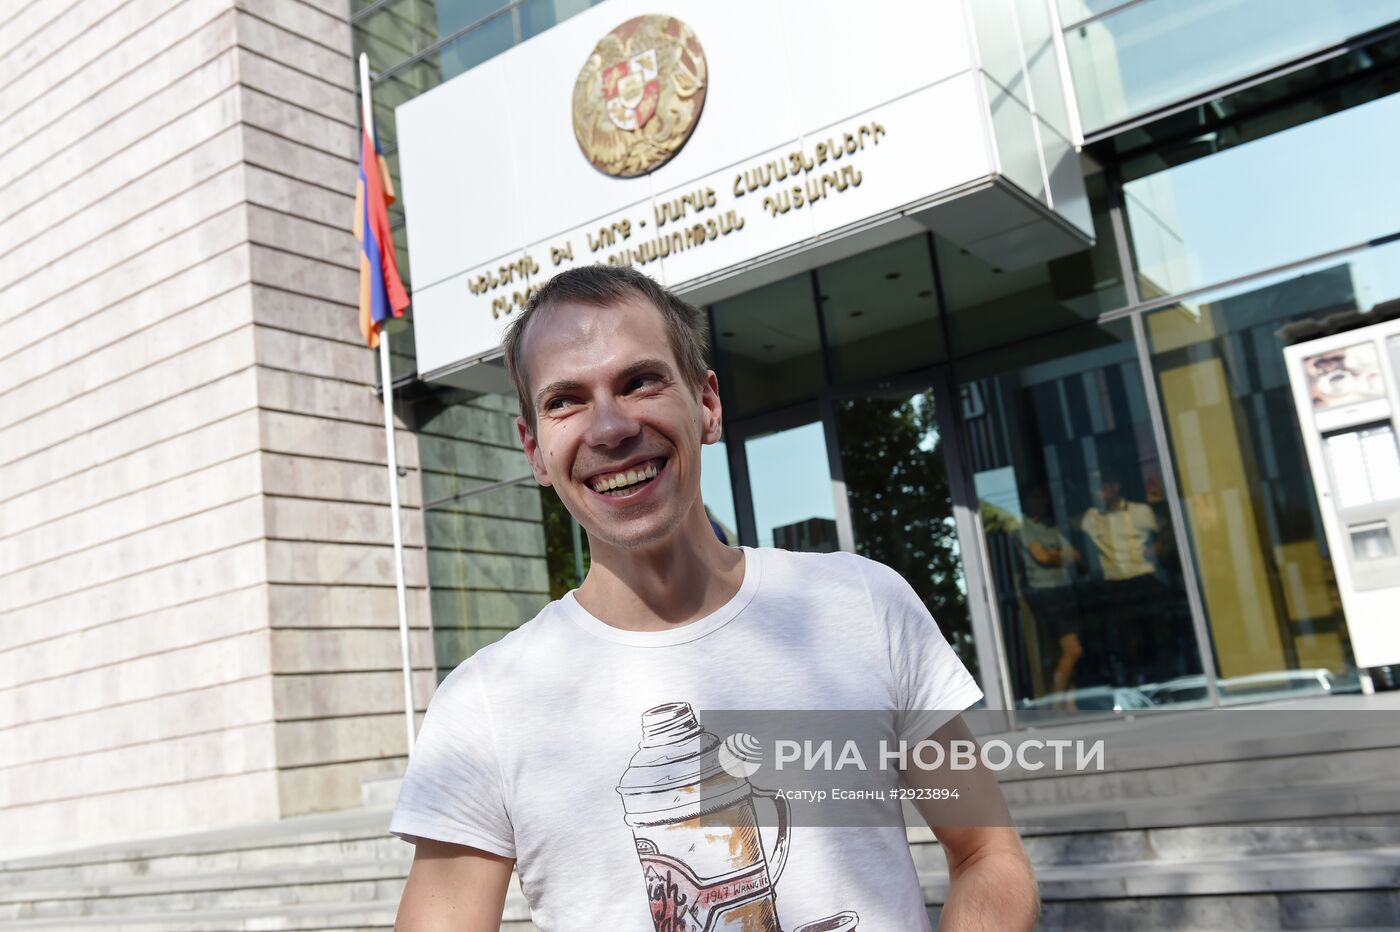 Рассмотрение ходатайства Генпрокуратуры Армении о временном аресте гражданина России Сергея Миронова